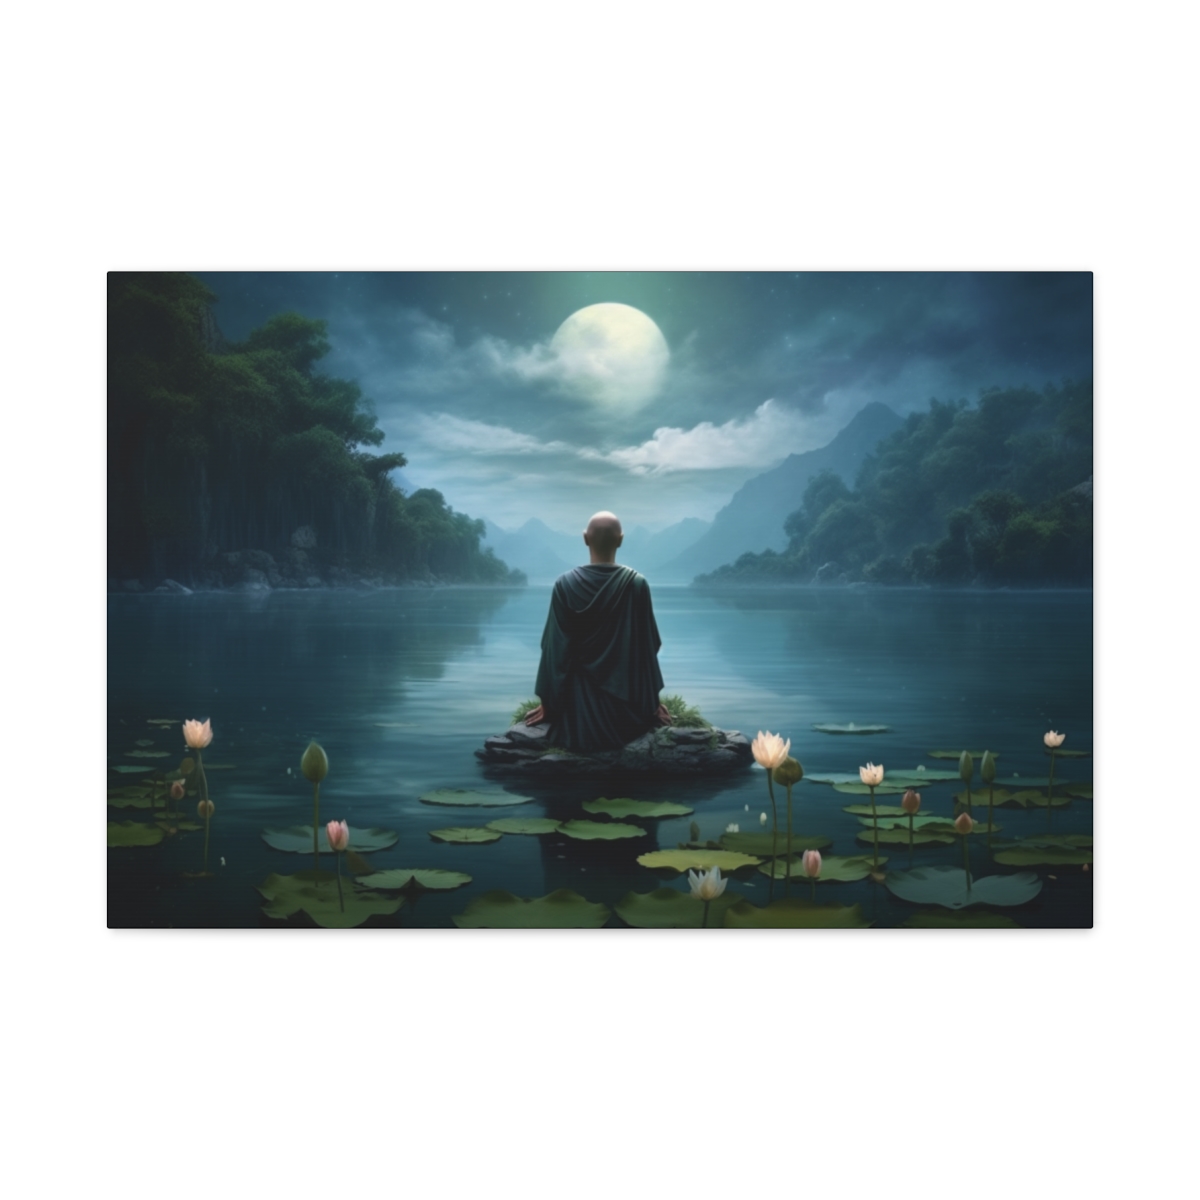 Zen Art Print: Contemplation